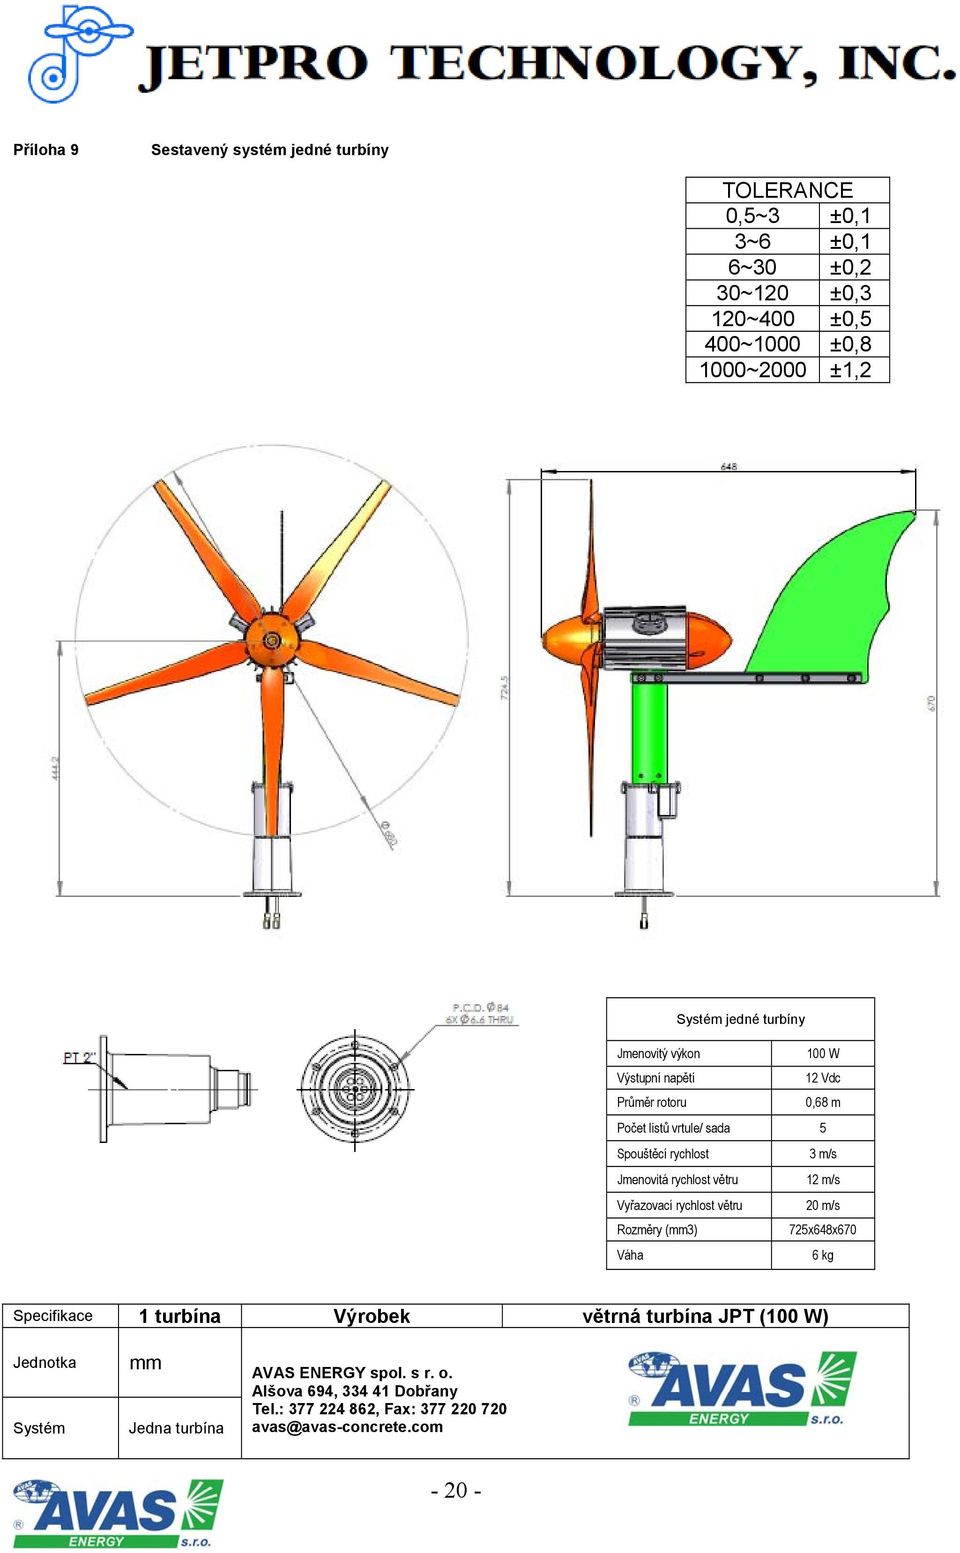 Vyřazovací rychlost větru 20 m/s Rozměry (mm3) 725x648x670 Váha 6 kg Specifikace 1 turbína Výrobek větrná